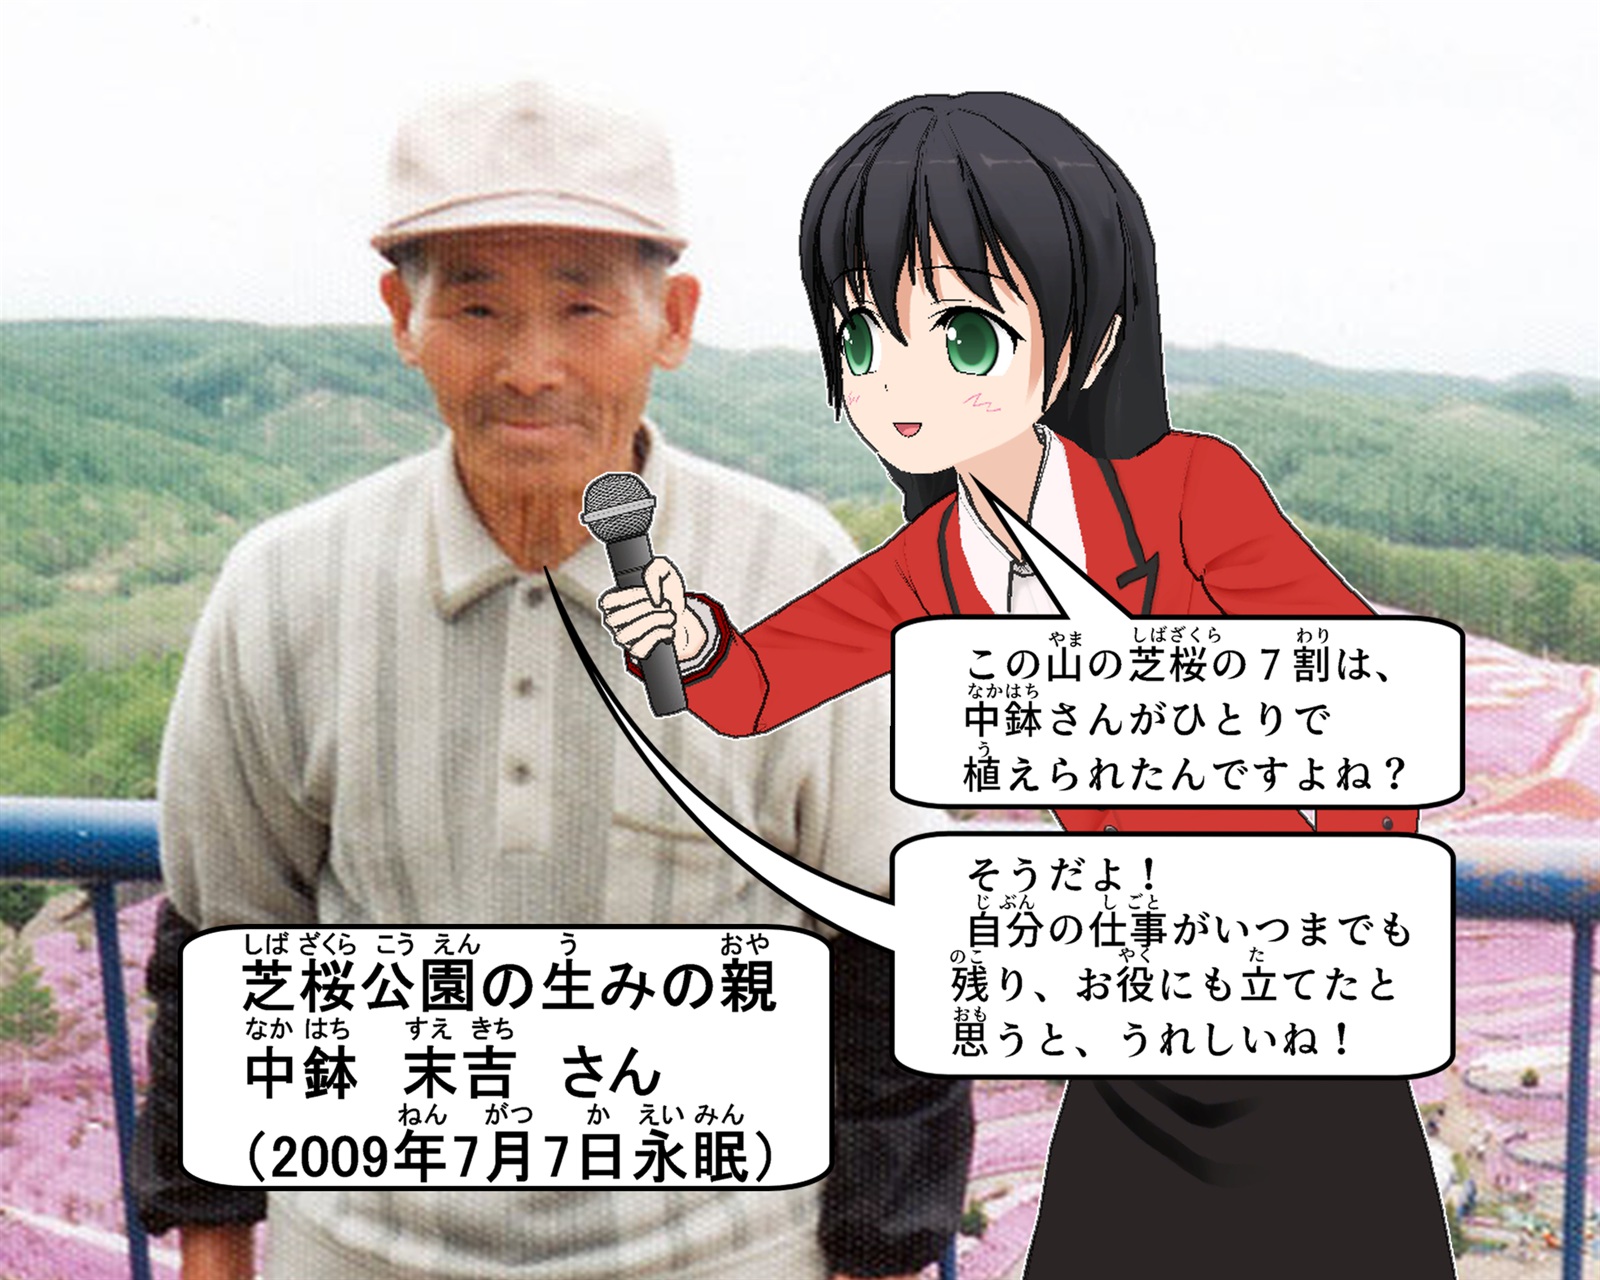 芝桜公園の生みの親である中鉢末吉さんにガイドの女の子がインタビューしているイラスト